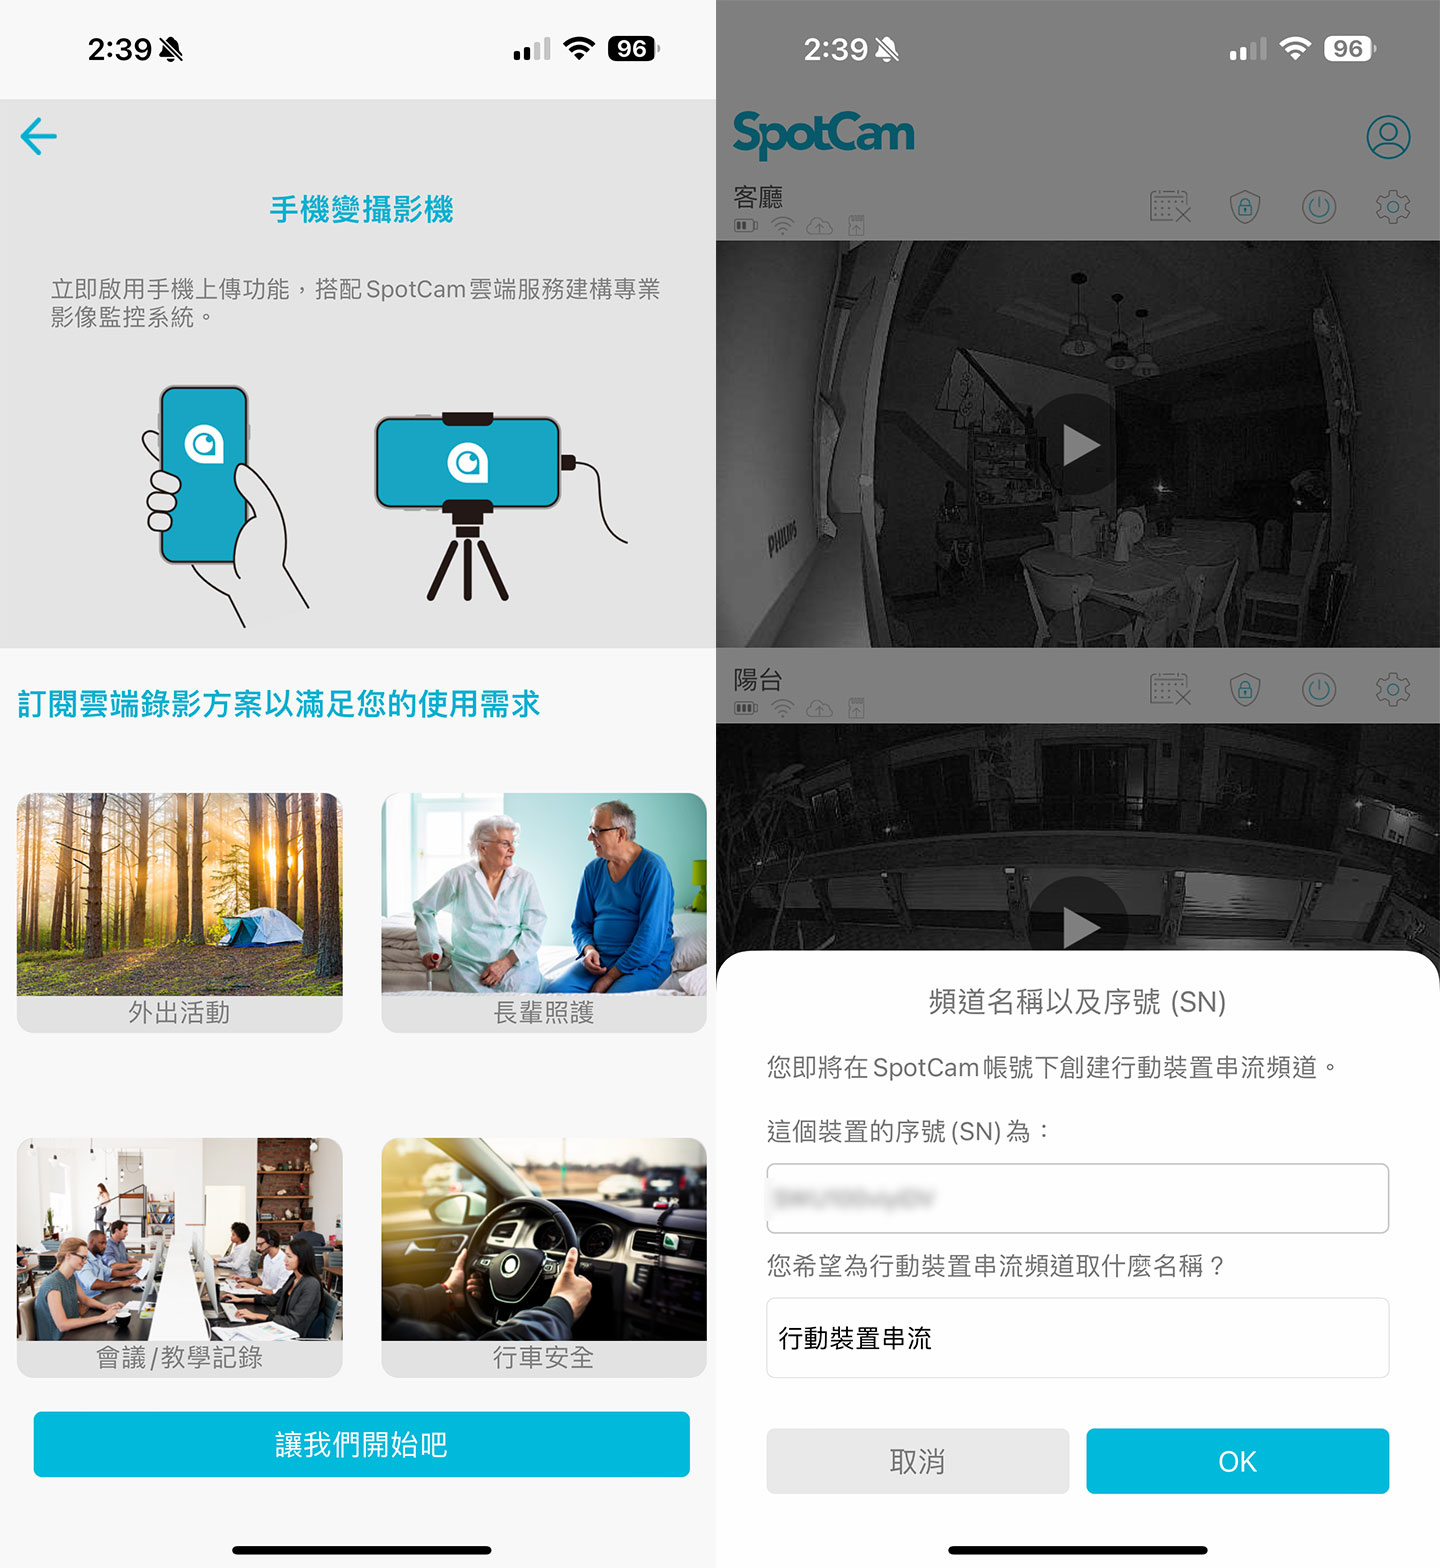 外，SpotCam App 也提供了相當方便的「手機變攝影機」的即時影像串流功能，可將手機畫面轉為即時監控系統使用，啟用後可自行定備的序號與串流頻道名稱。